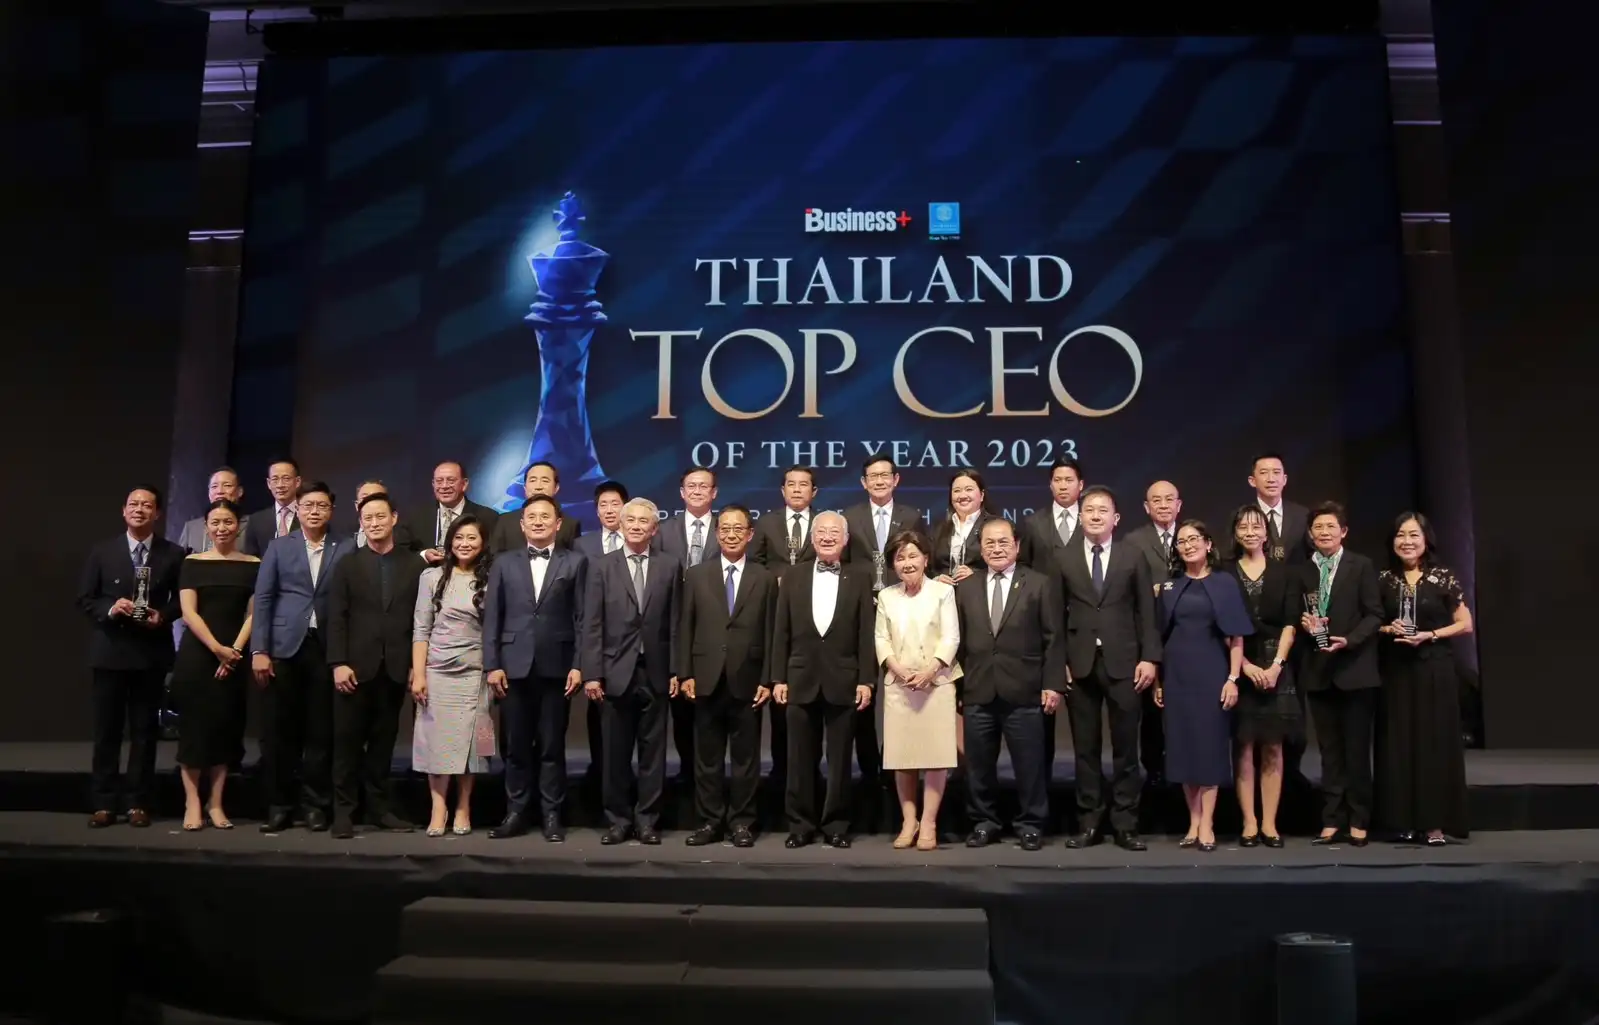 หมอเฉลิม เครือเกษมราษฎร์ รับรางวัล THAILAND TOP CEO OF THE YEAR 2023 ด้านบริการสุขภาพ HealthServ